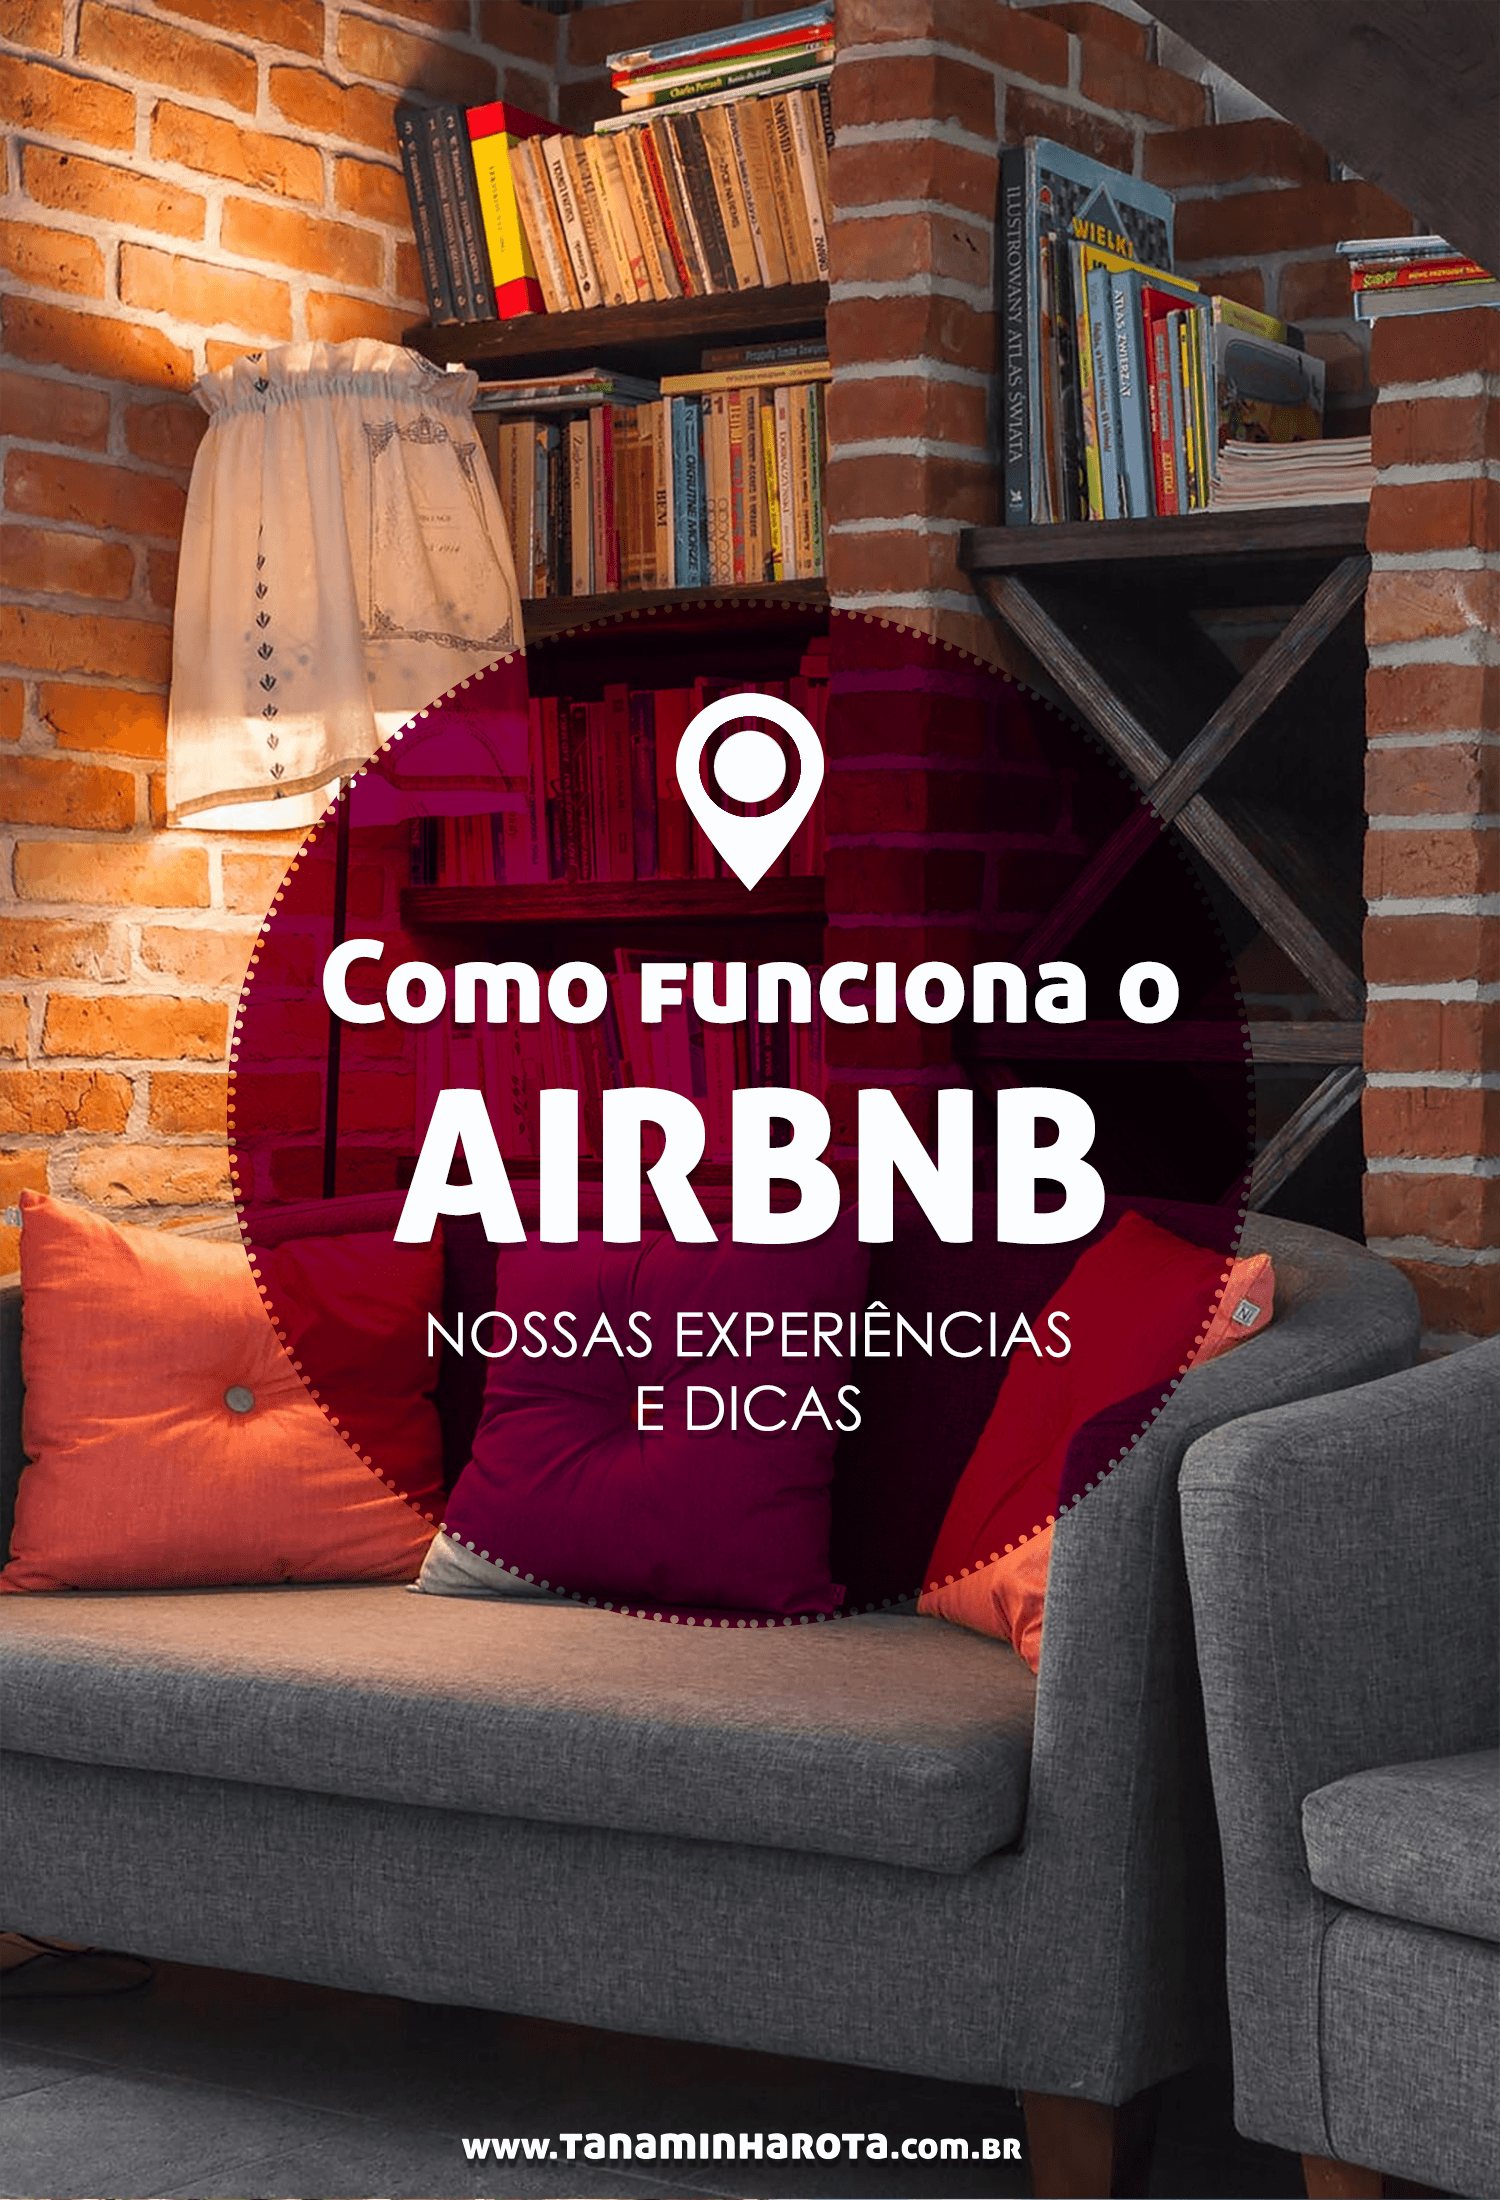 Descubra nesse post como funciona o Airbnb, site que permite que você alugue apartamentos completos durante viagens! #viagem #airbnb #hospedagem #dicadeviagem